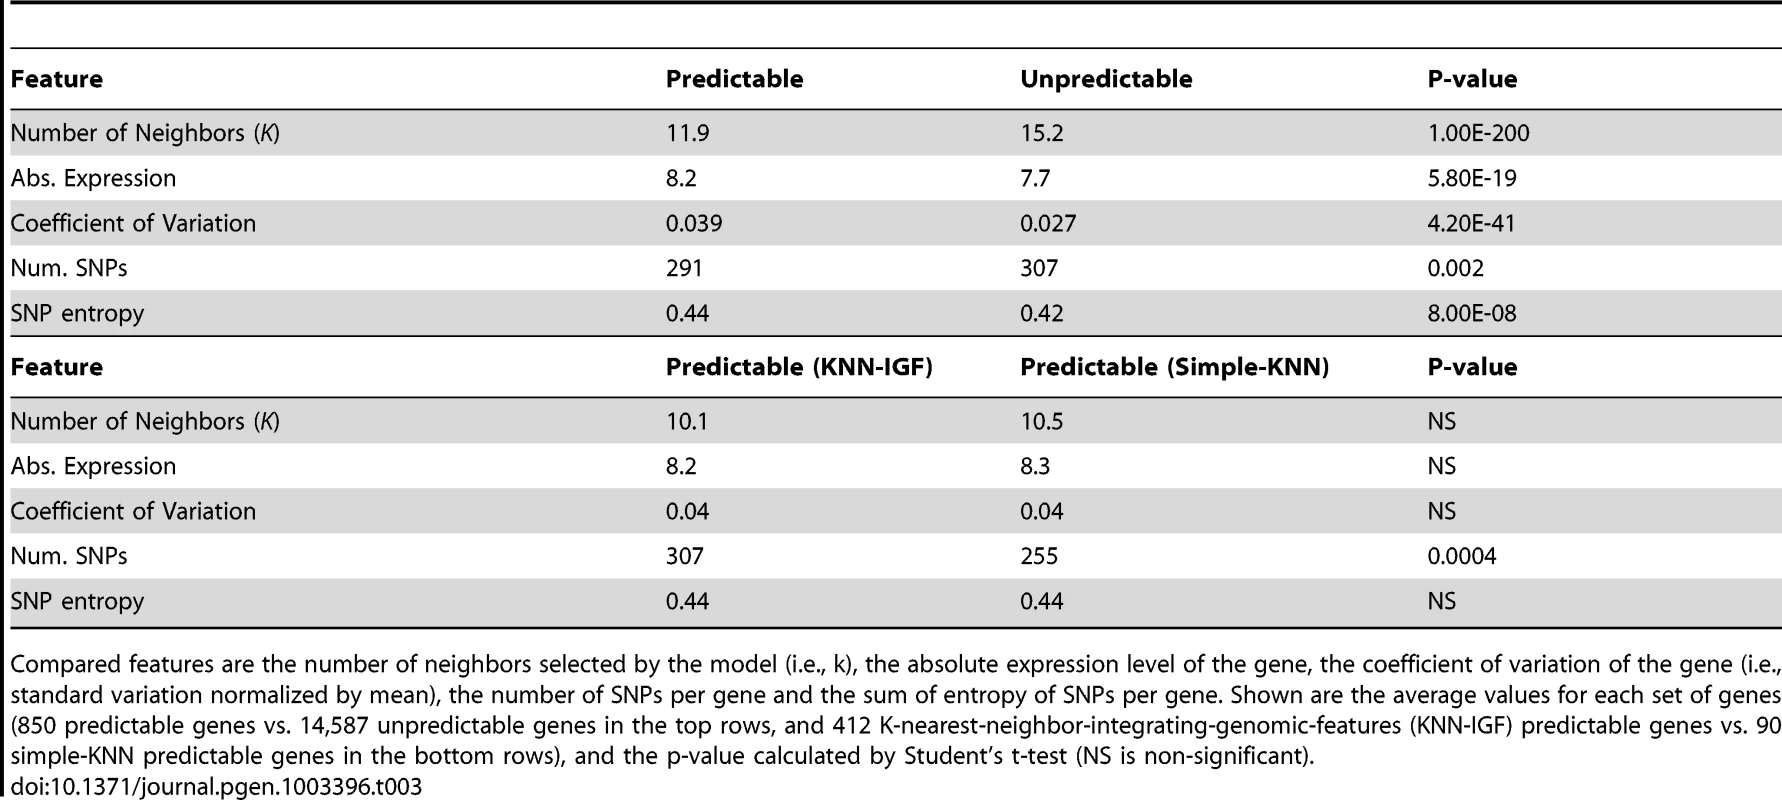 Comparison between predictable and unpredictable genes.